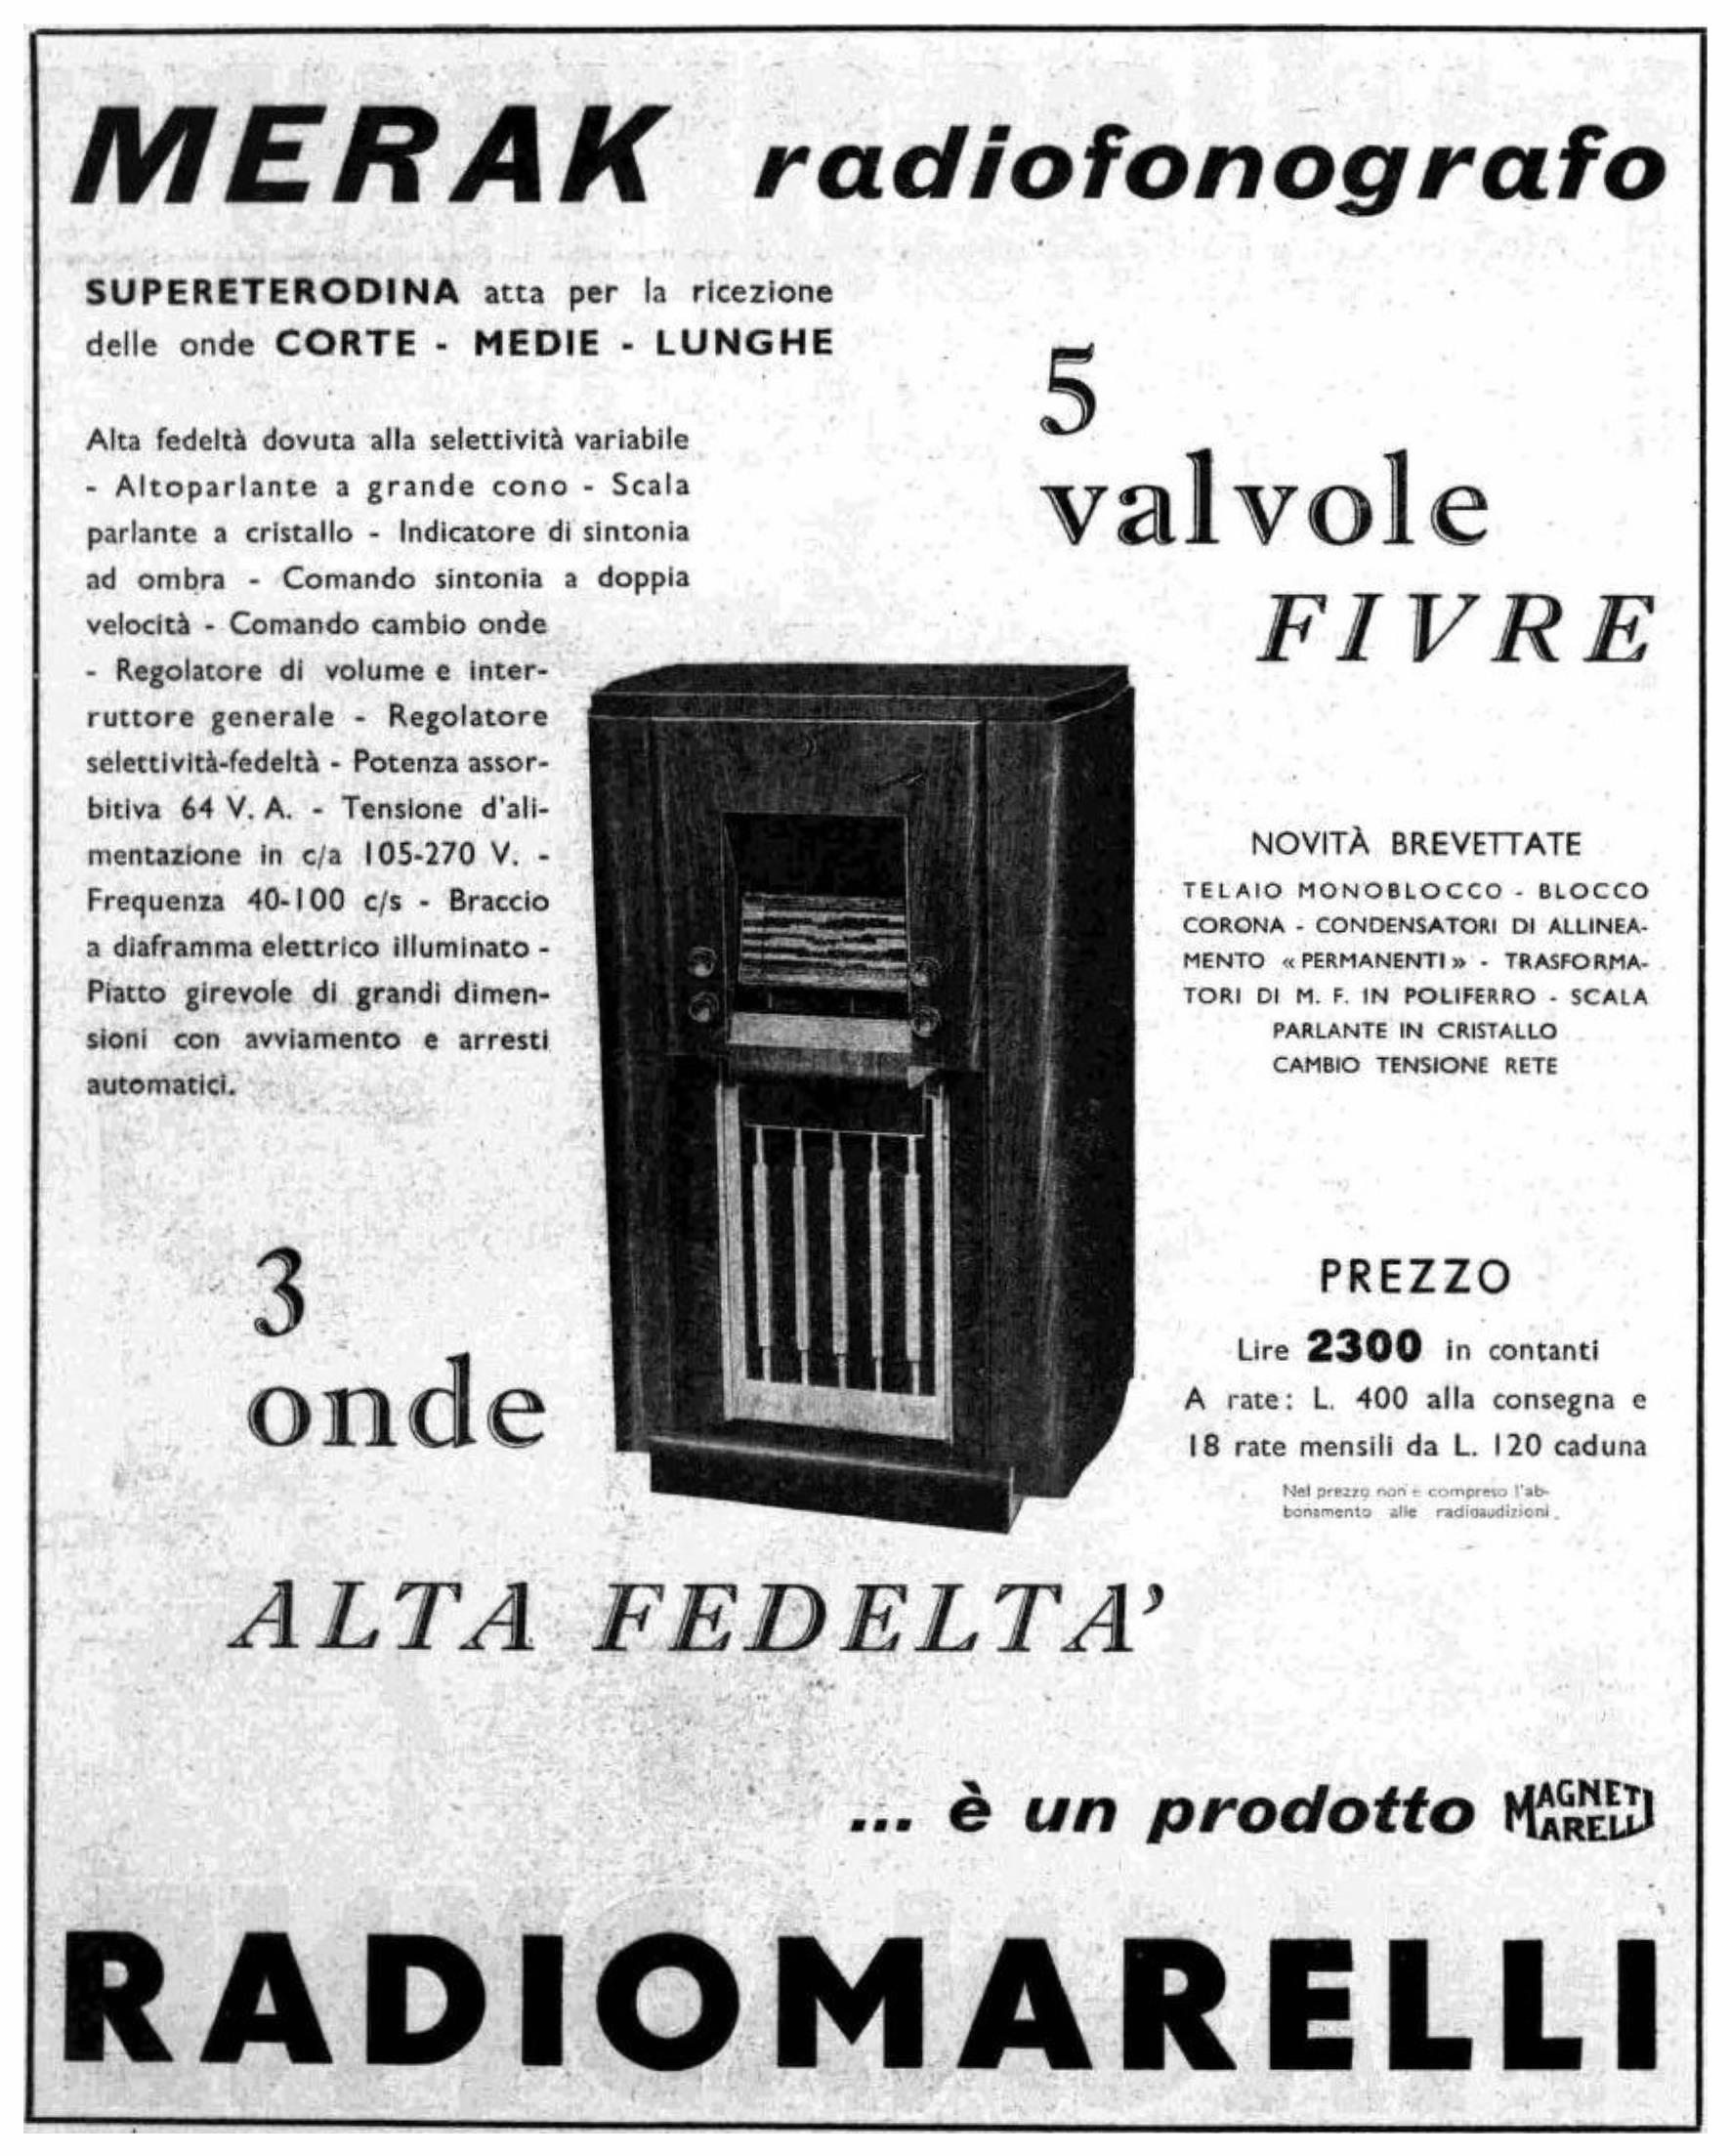 Radiomarelli 1937 1.jpg